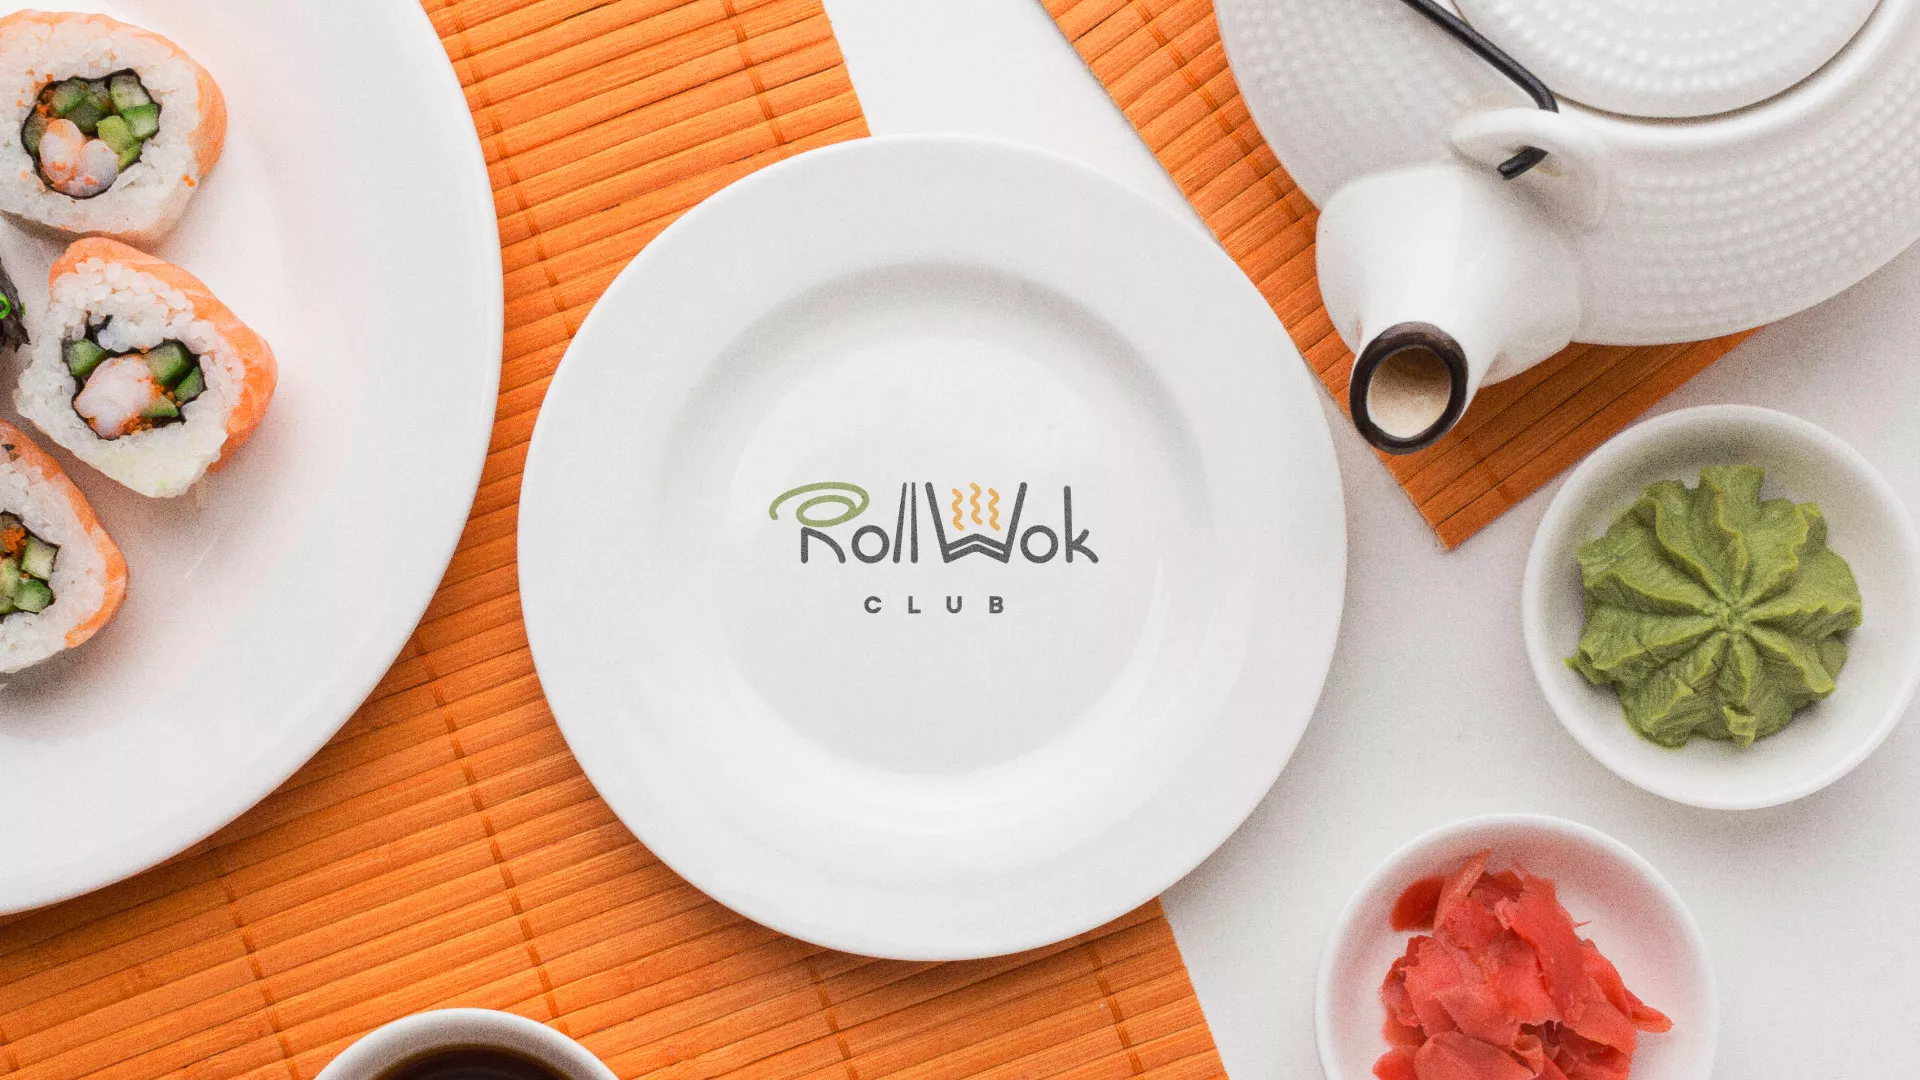 Разработка логотипа и фирменного стиля суши-бара «Roll Wok Club» в Валуйках